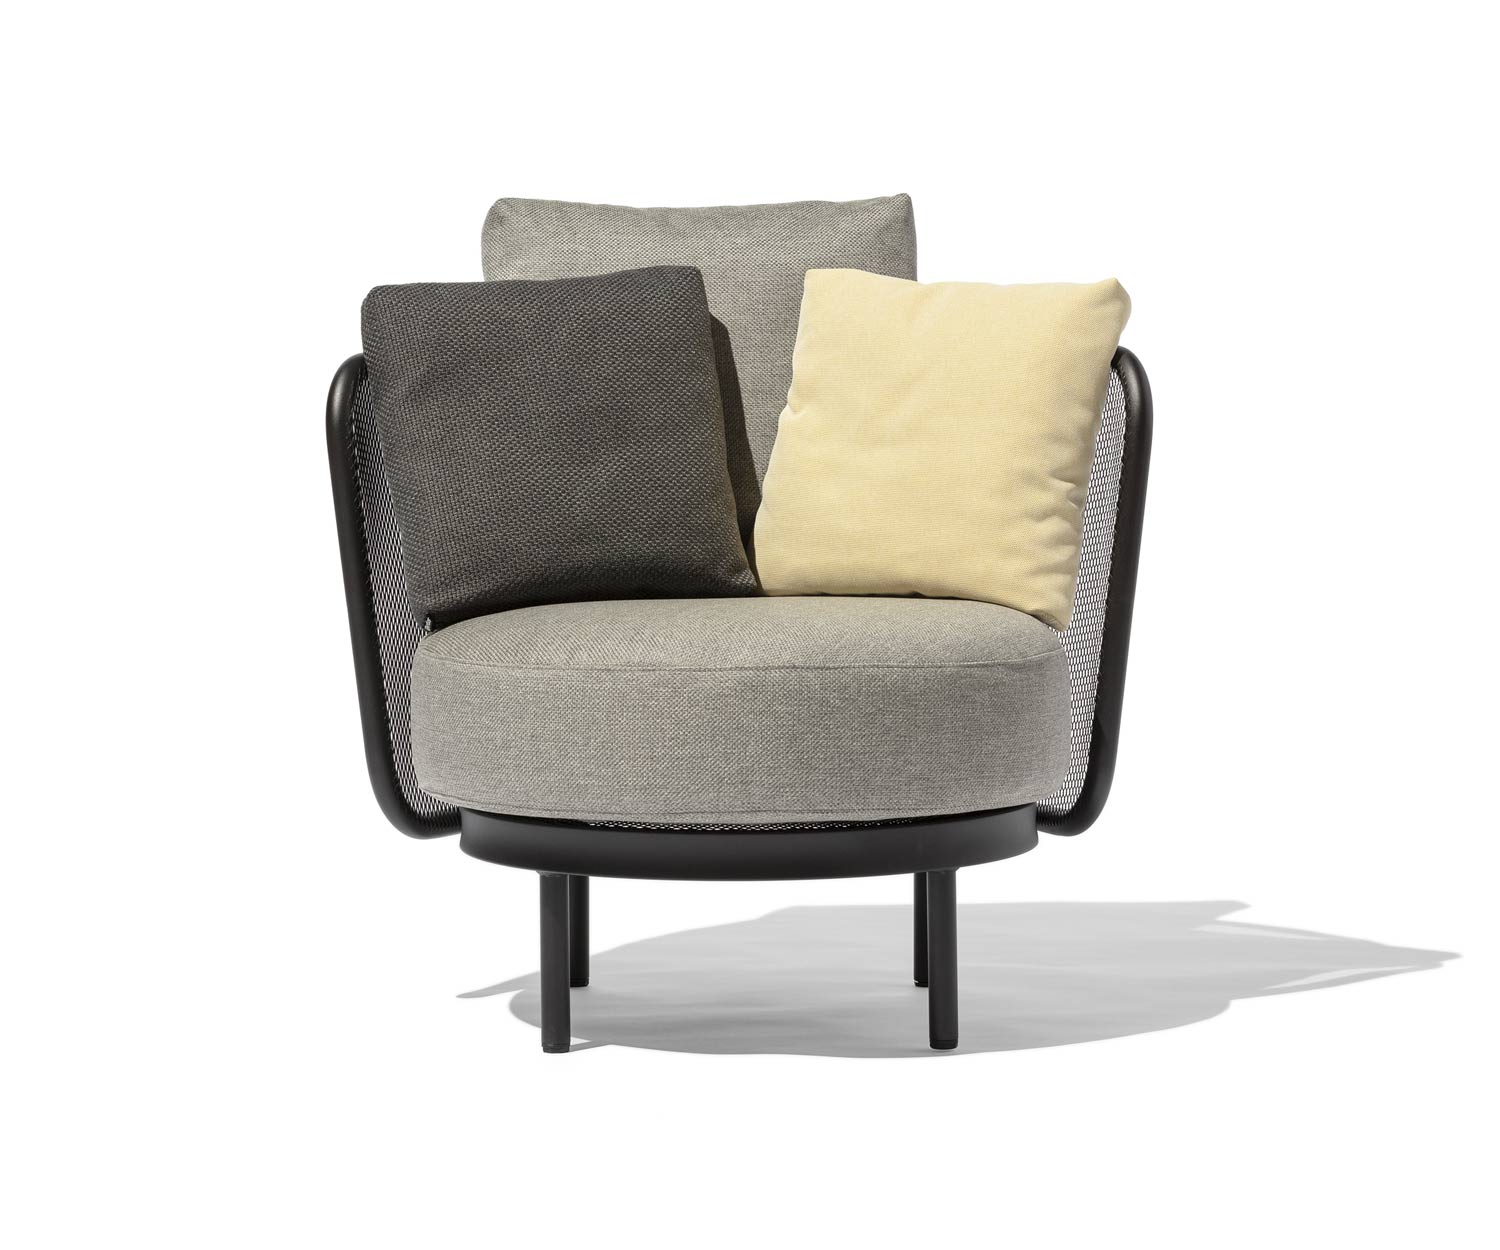 Resistente alle intemperie Todus Baza Round Design, sedia a sdraio con set di cuscini